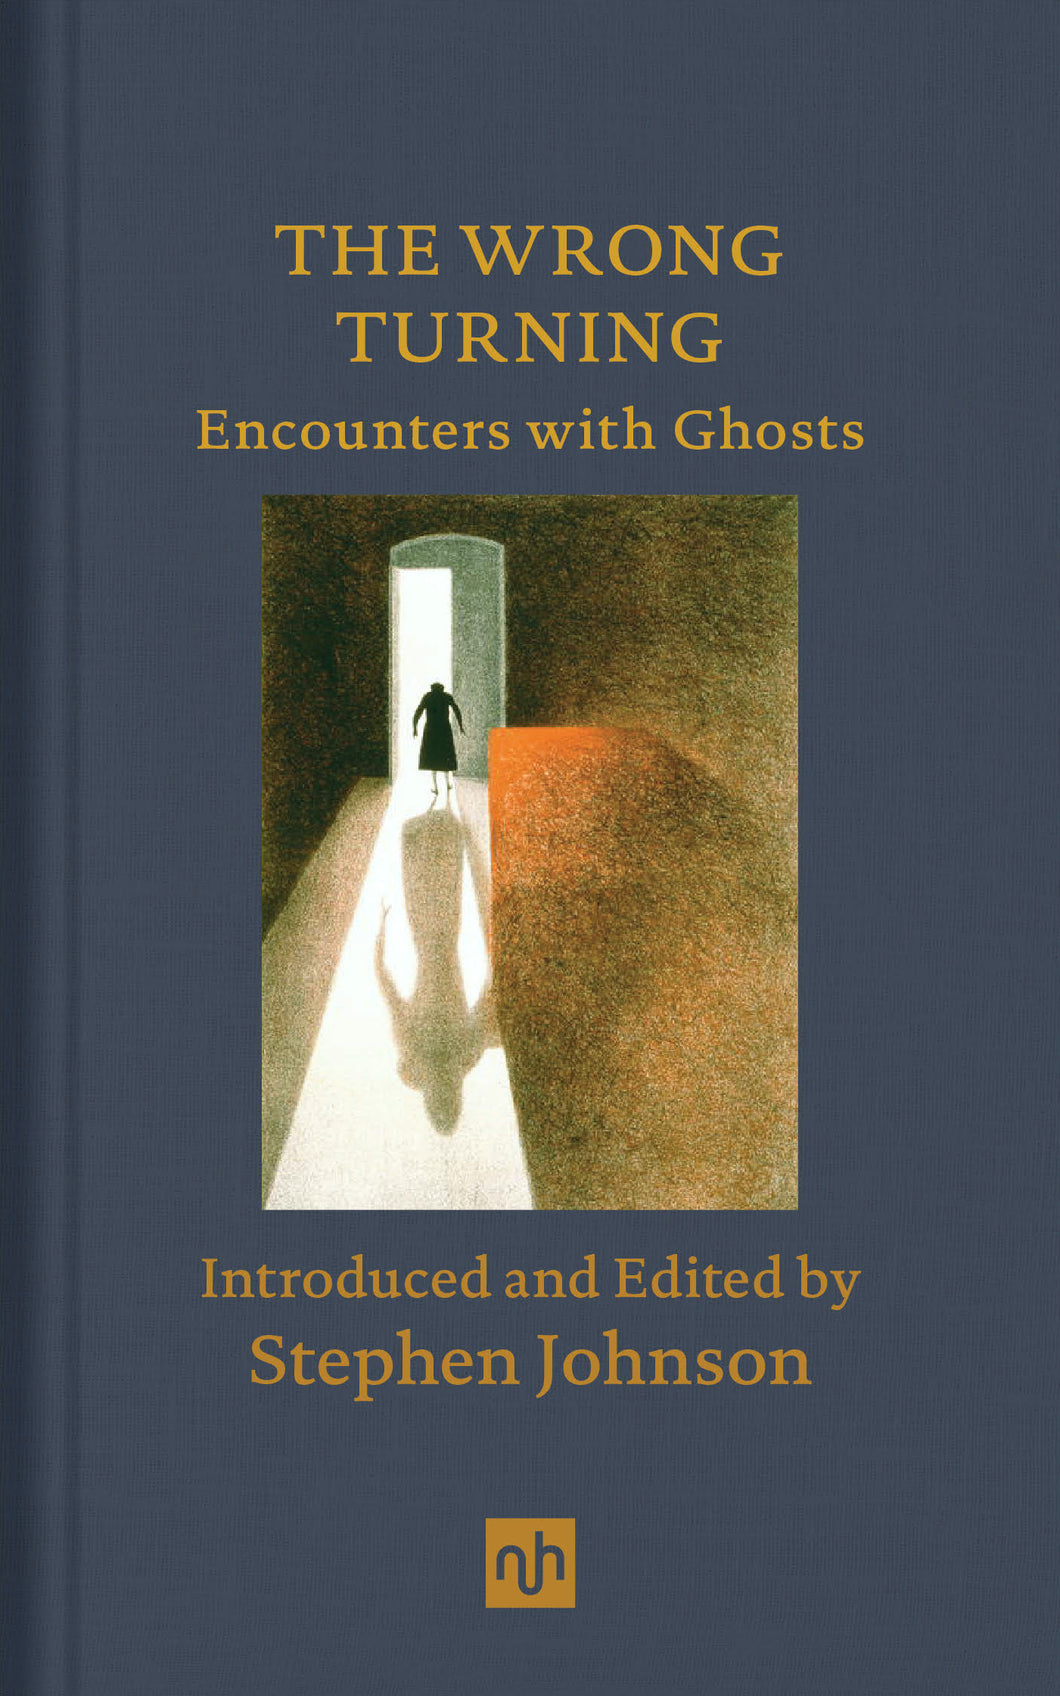 The Wrong Turning: Encounters with Ghosts ร้านหนังสือและสิ่งของ เป็นร้านหนังสือภาษาอังกฤษหายาก และร้านกาแฟ หรือ บุ๊คคาเฟ่ ตั้งอยู่สุขุมวิท กรุงเทพ